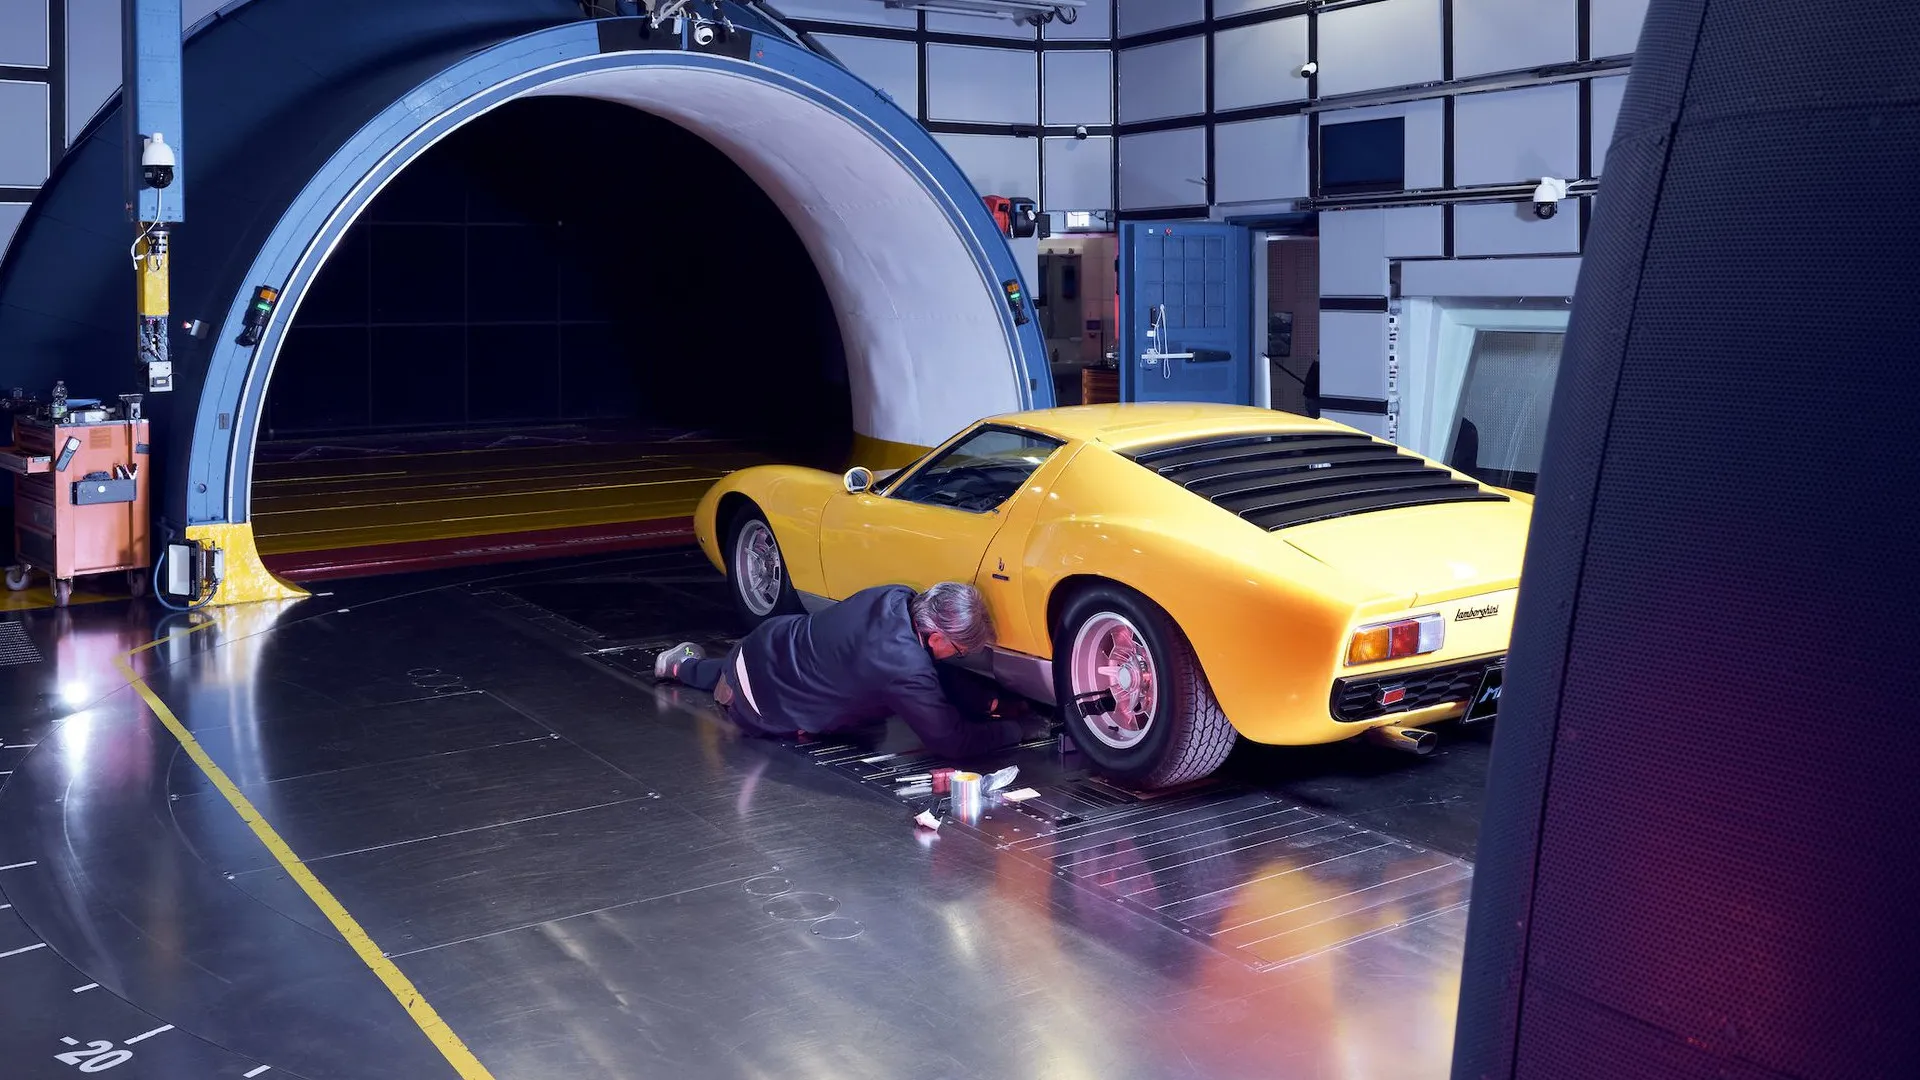 ¿Cómo se comportará el Lamborghini Miura en un túnel de viento? La revista Road & Track lo ha comprobado